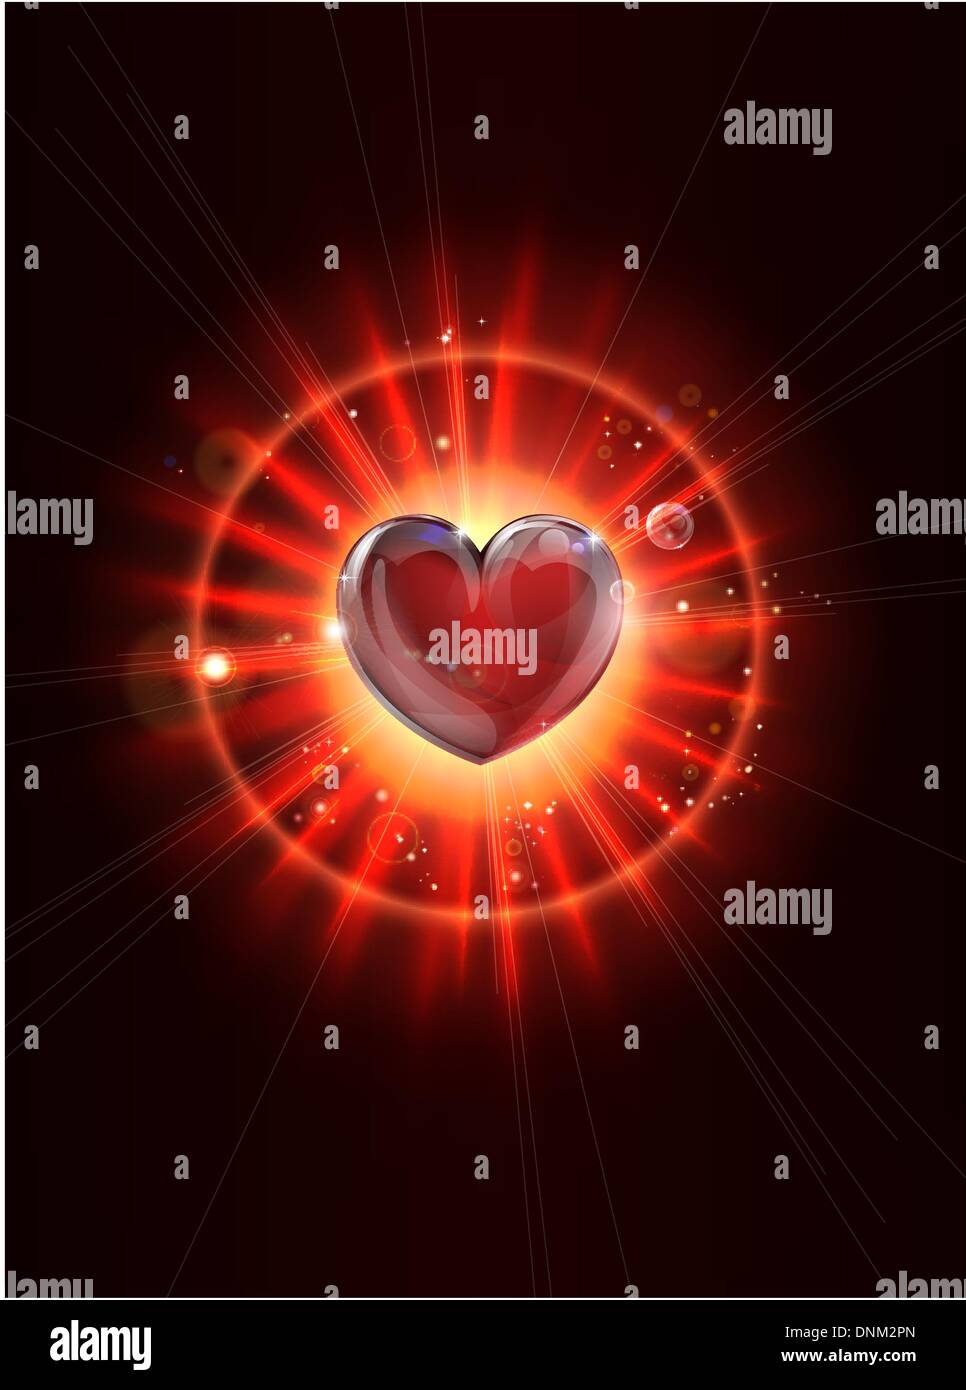 Eine dynamische funky cool Lichtstrahlen Valentines Heart Abbildung Stock Vektor